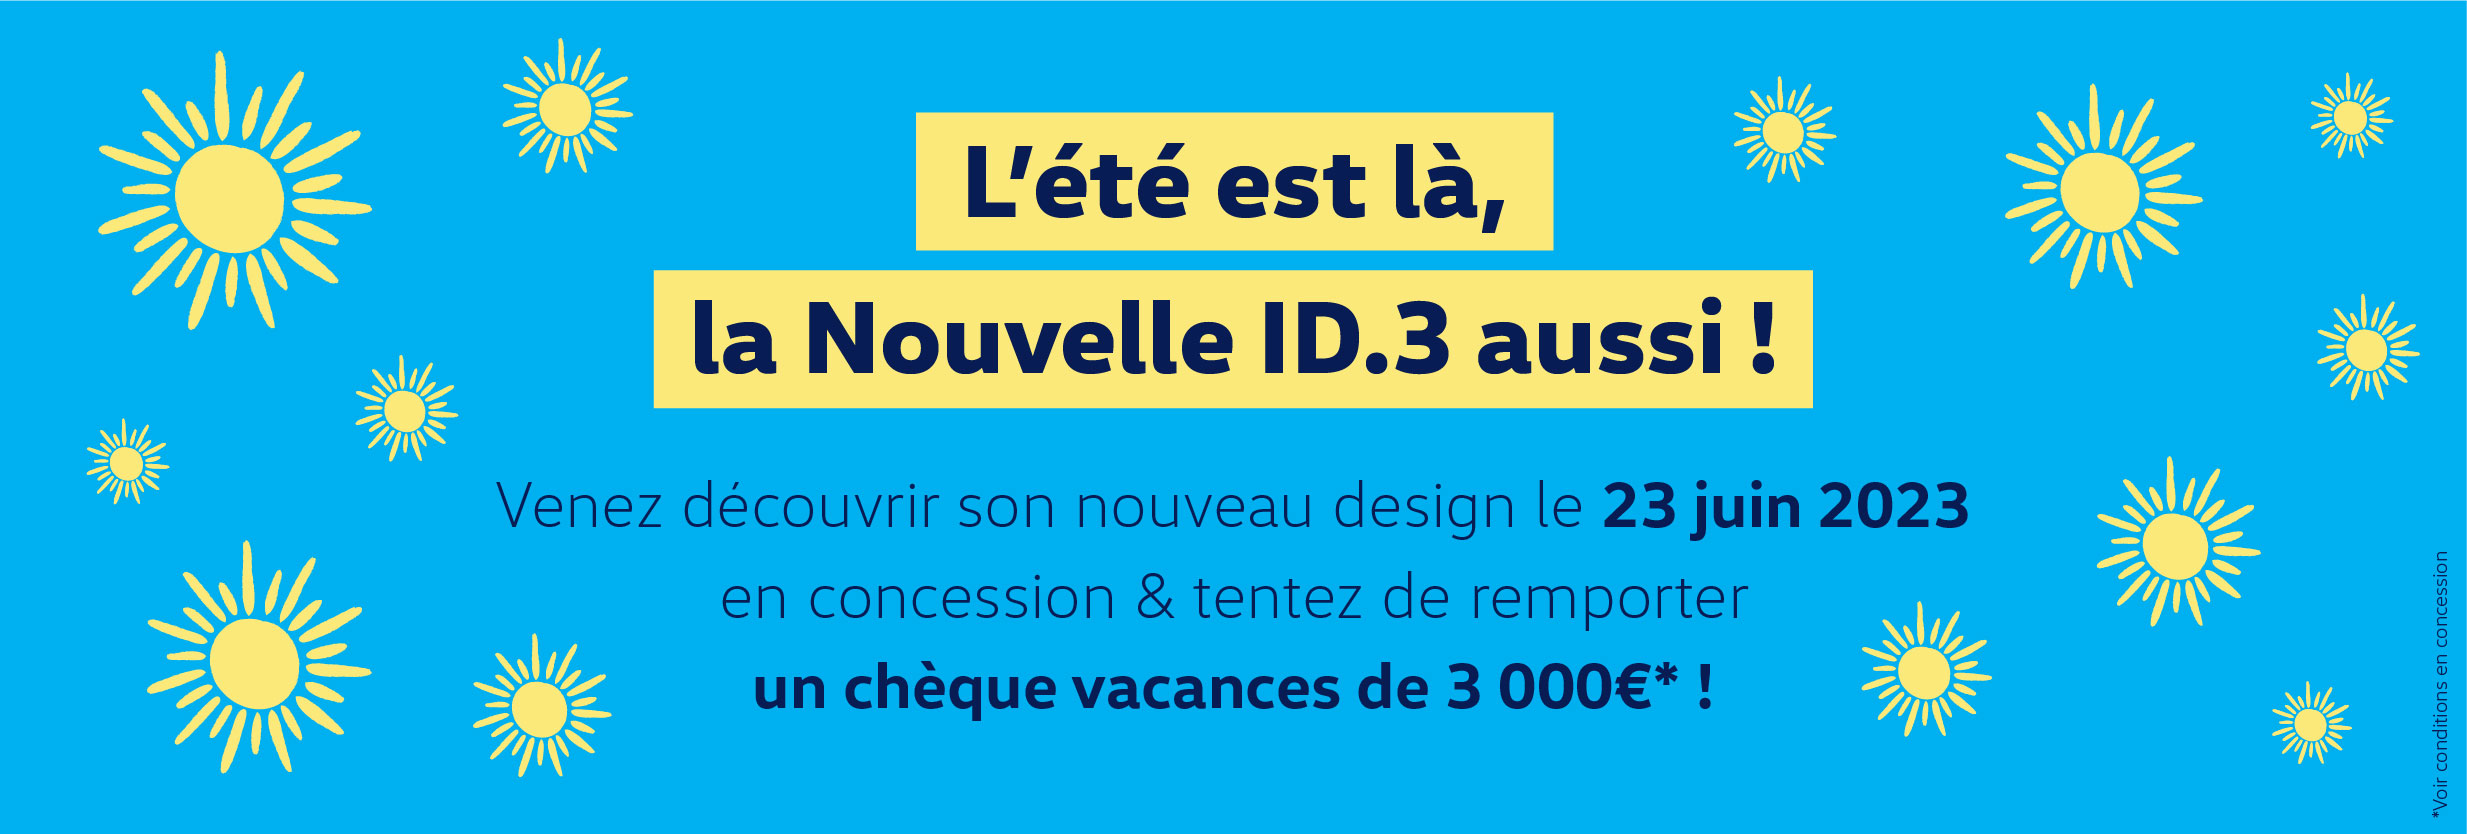 Volkswagen Abbeville - Premium Picardie - Découvrez la nouvelle ID.3 en concession ! 